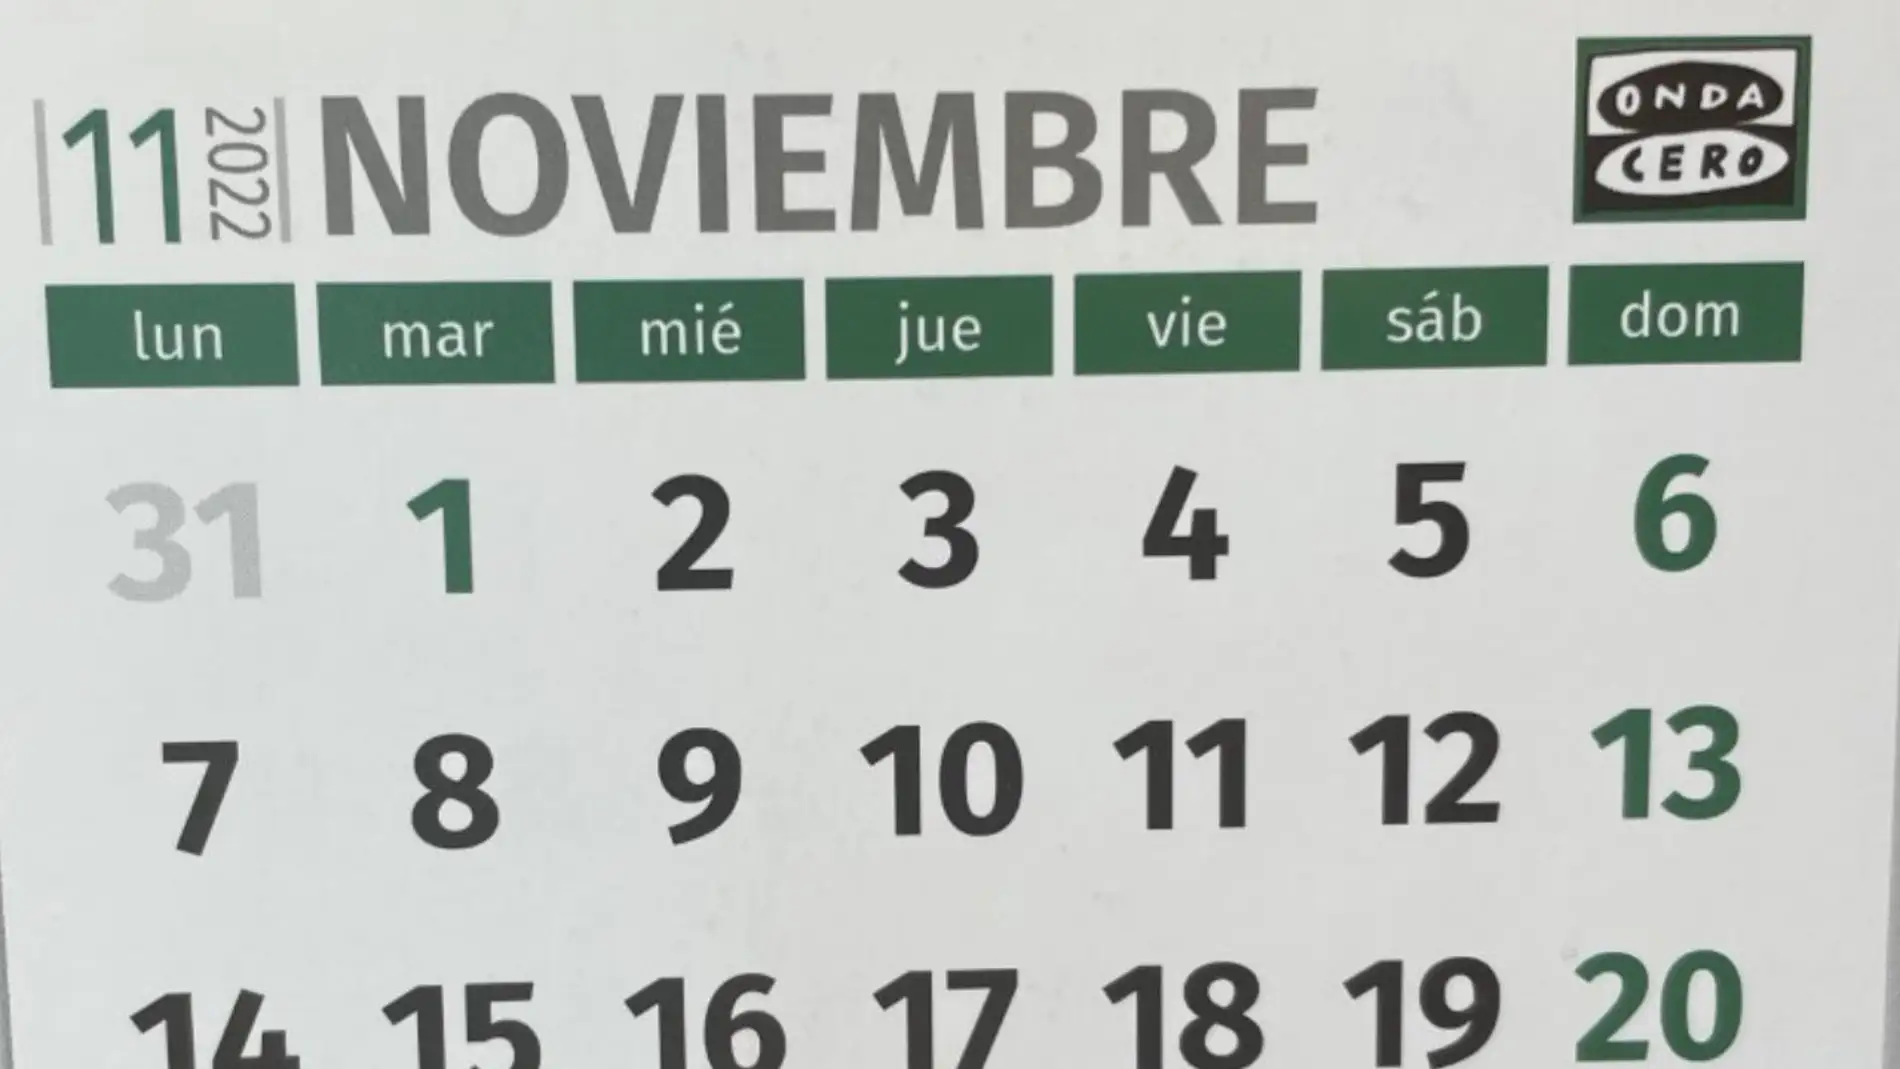 Calendario laboral: los días festivos en noviembre por comunidades